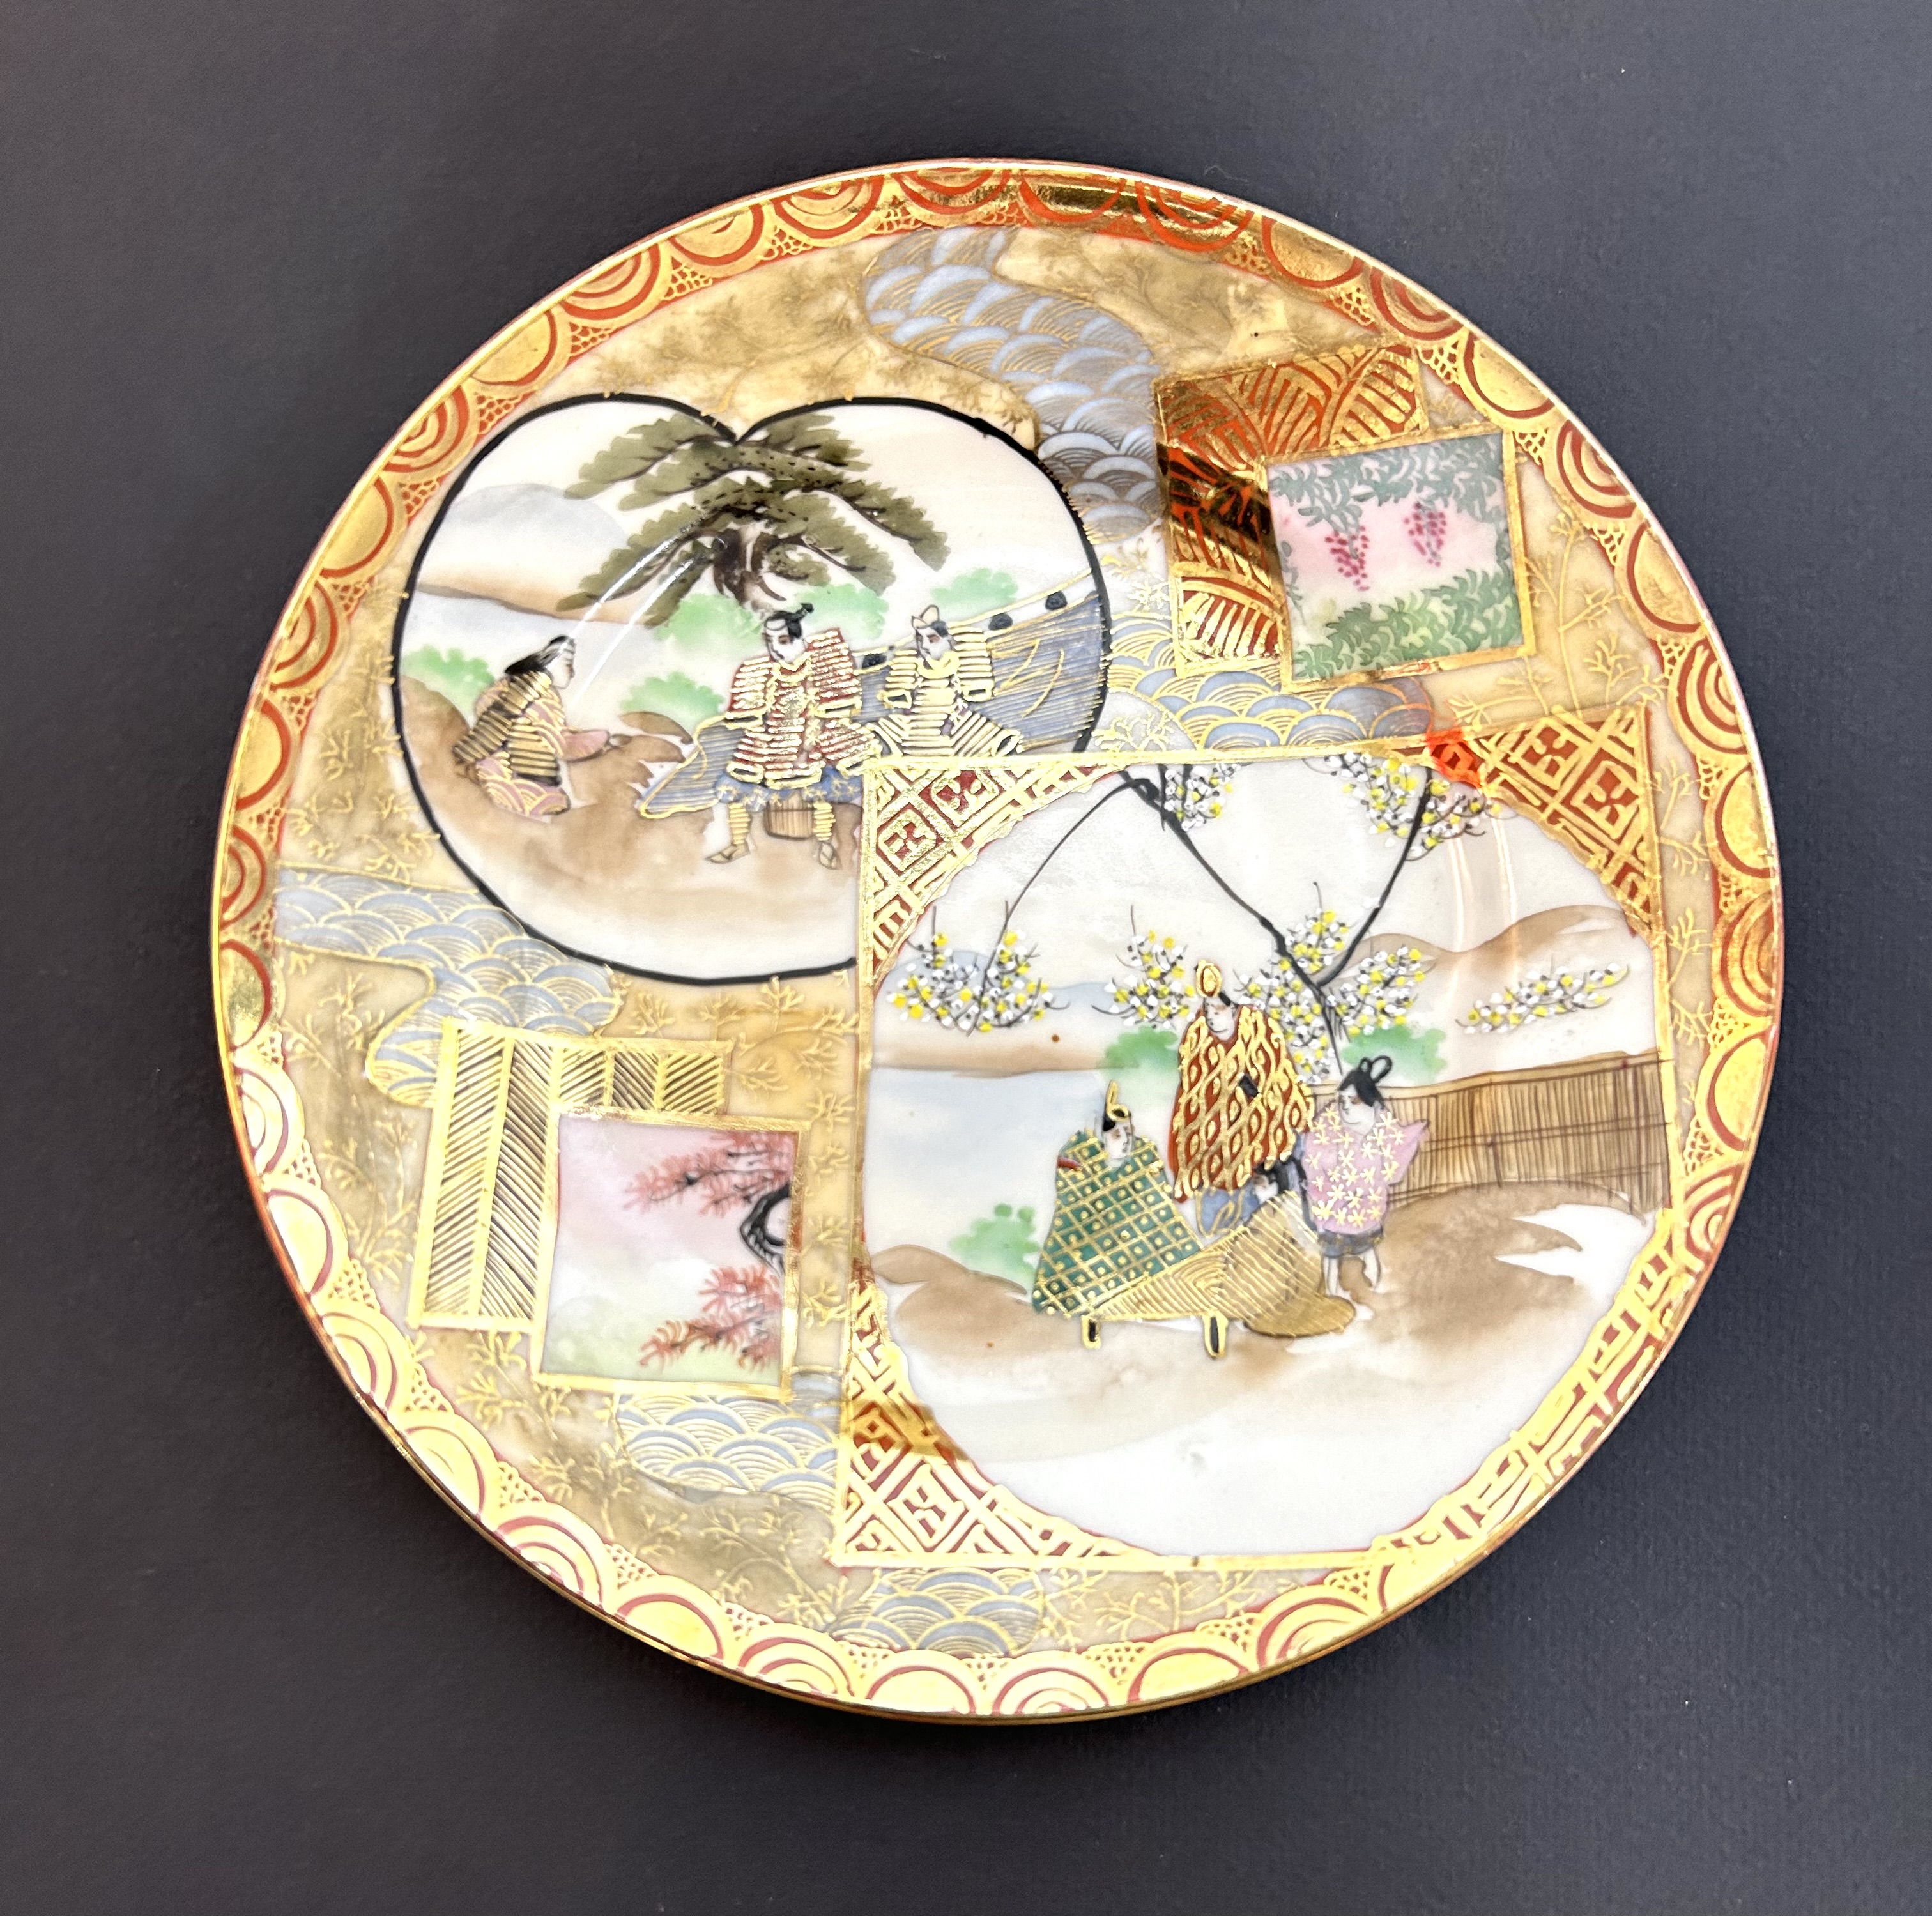 Originální porcelánový ručně malovaný zlacený talířek z Japonska